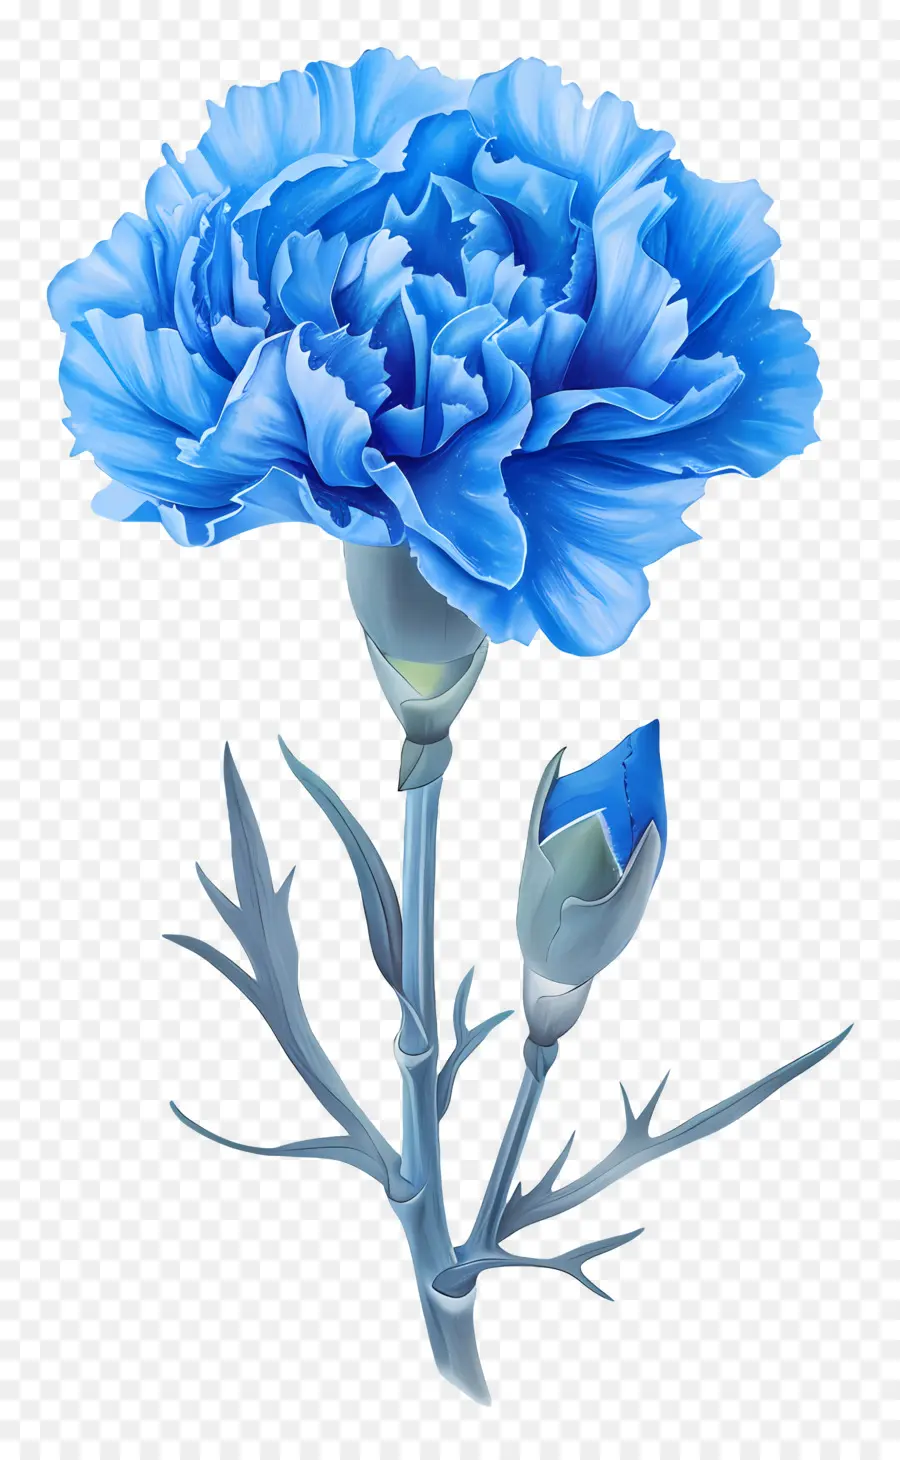 Carnazione blu blu fiore Bloom Petals - Carnazione blu in piena fioritura con pistillo